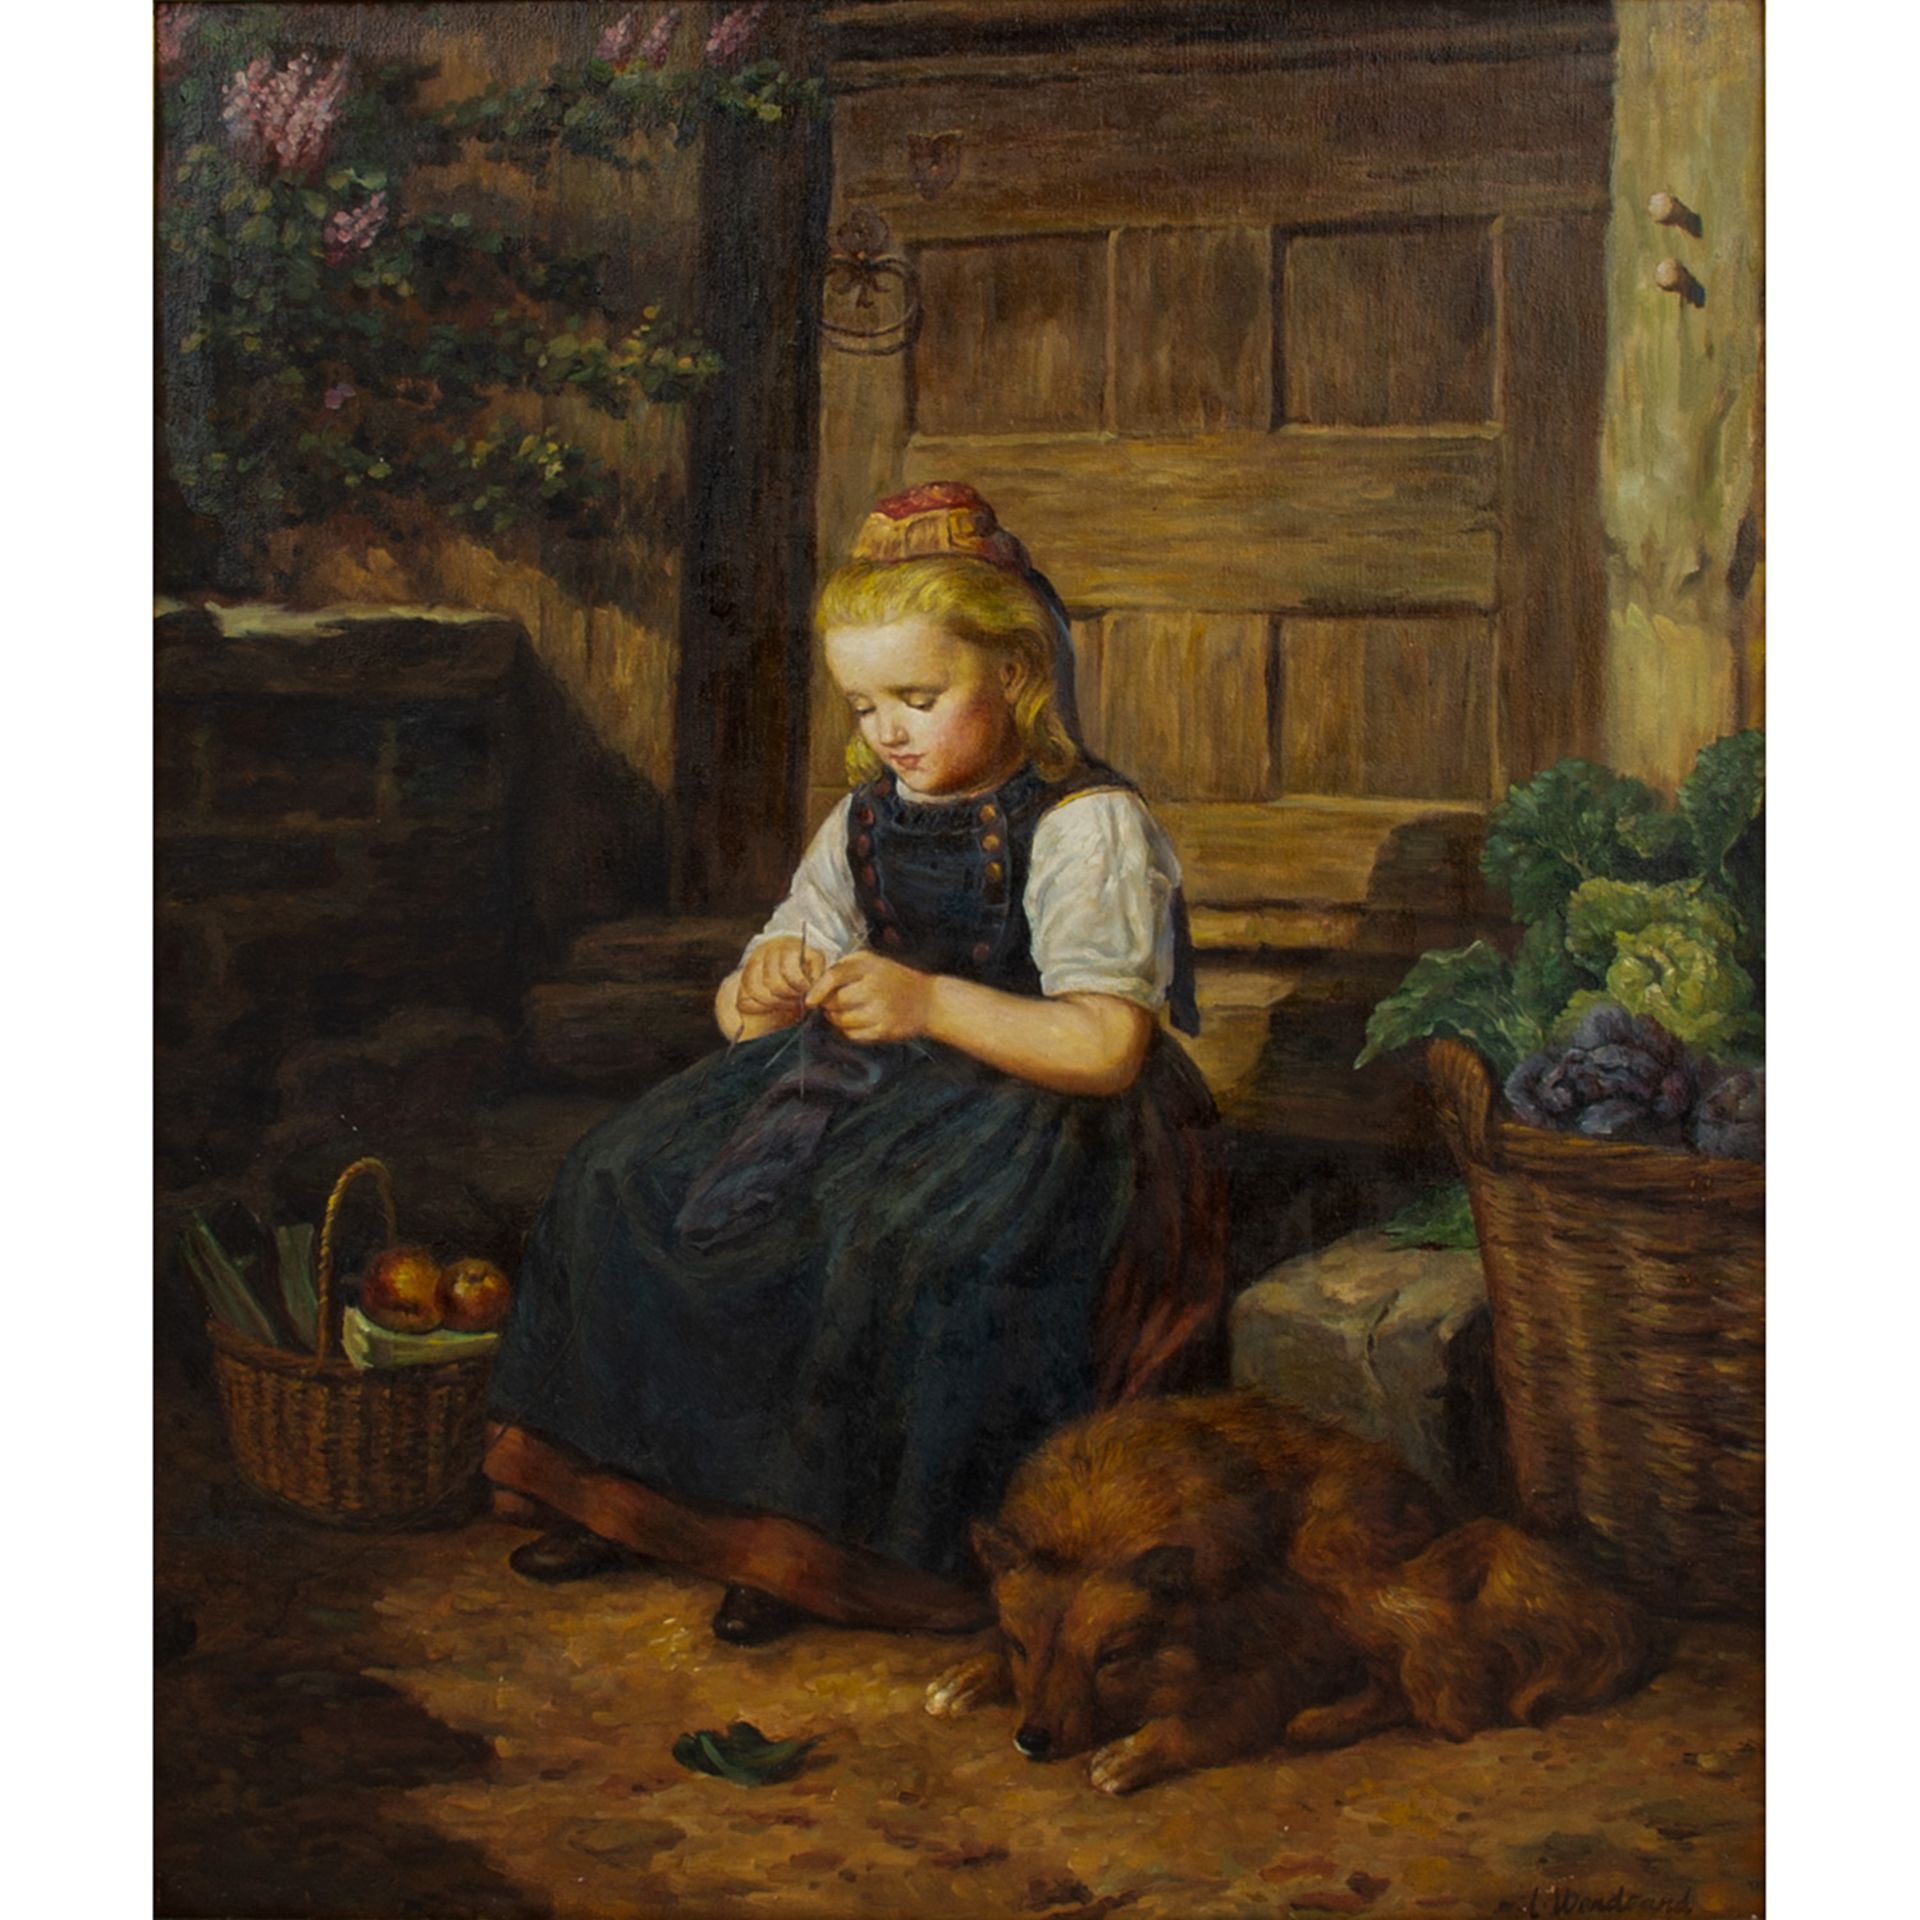 WENDLAND, L. (Genremaler 20. Jh.), "Mädchen in Tracht vor dem Haus sitzend bei der Handarbeit",